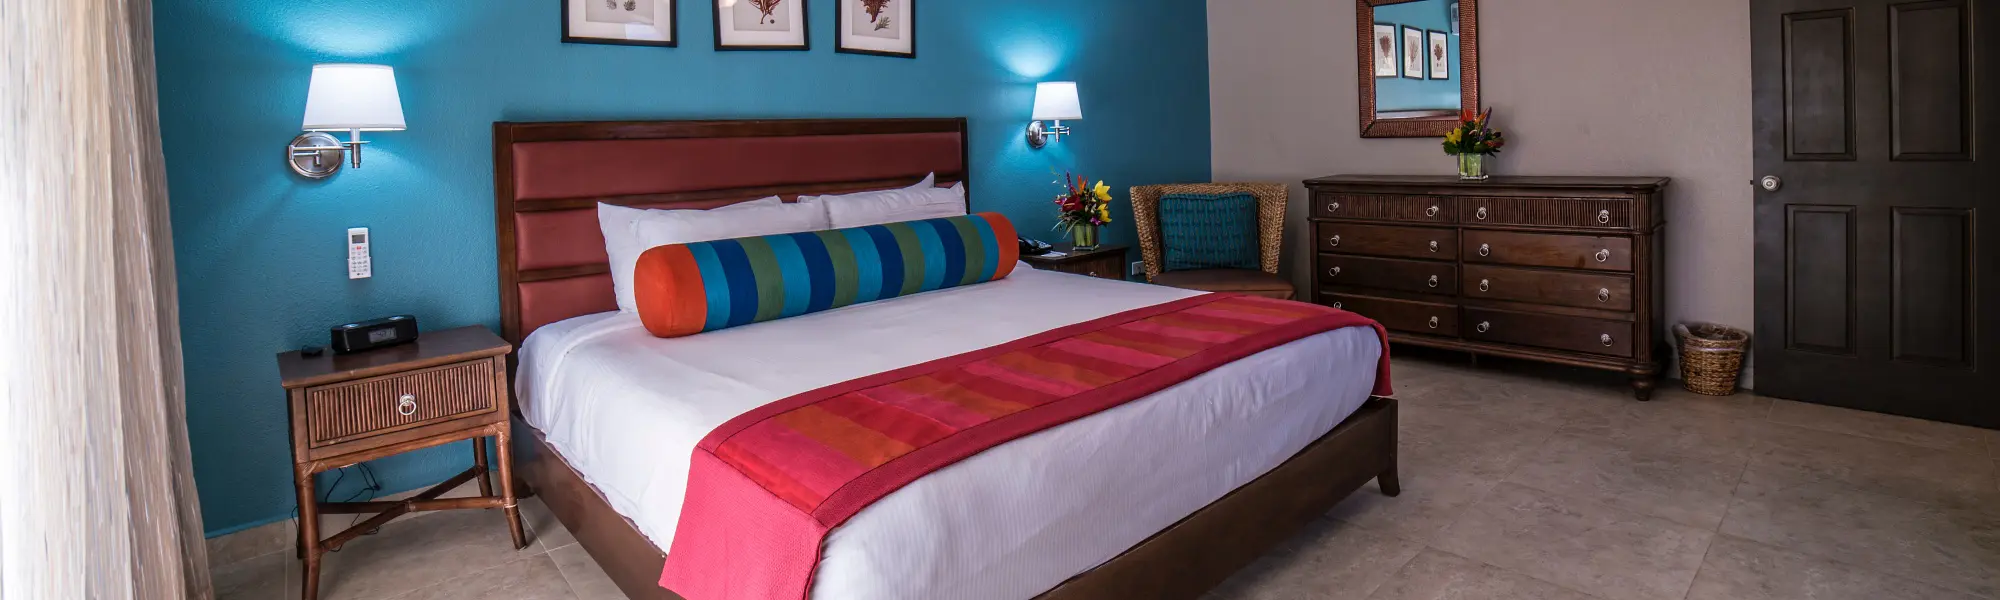 Deluxe One Bedroom Suite, St. Maarten